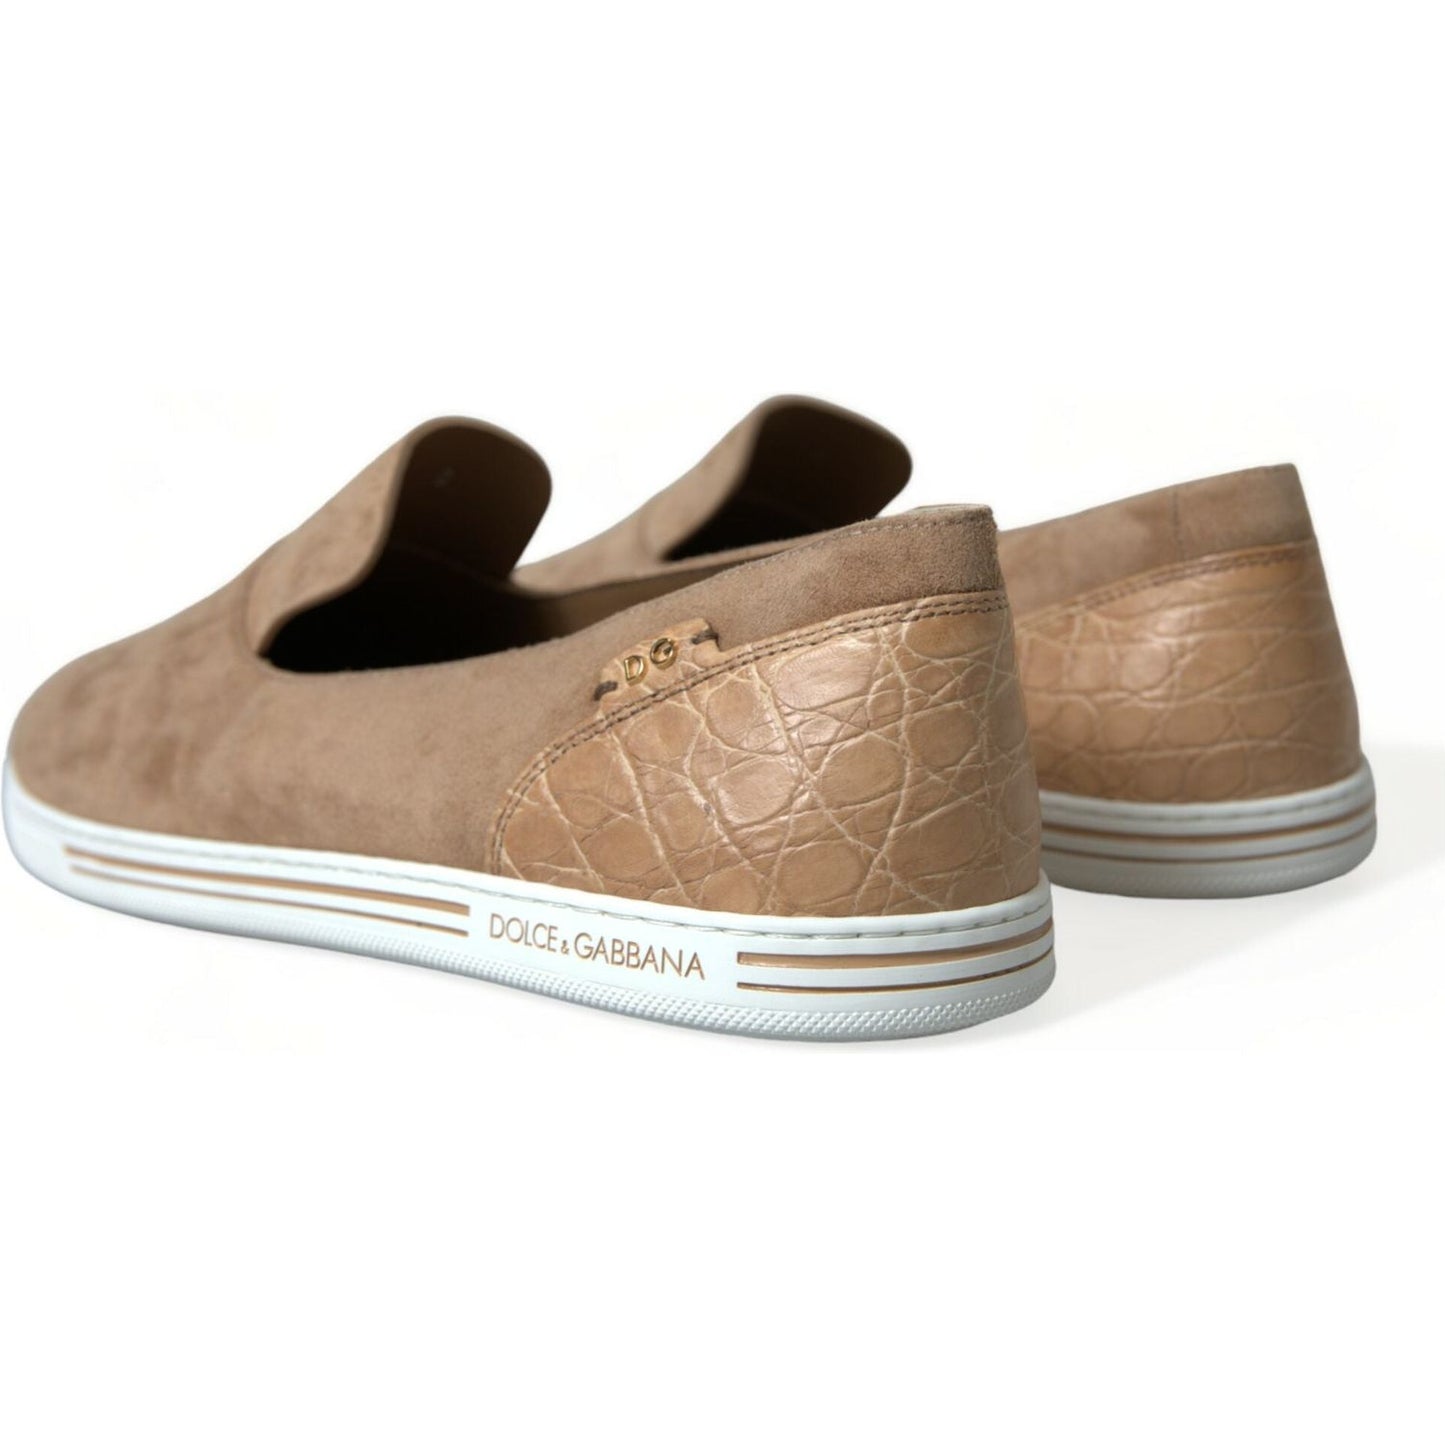 Dolce & Gabbana | Elegant Beige Leather Loafers| McRichard Designer Brands   